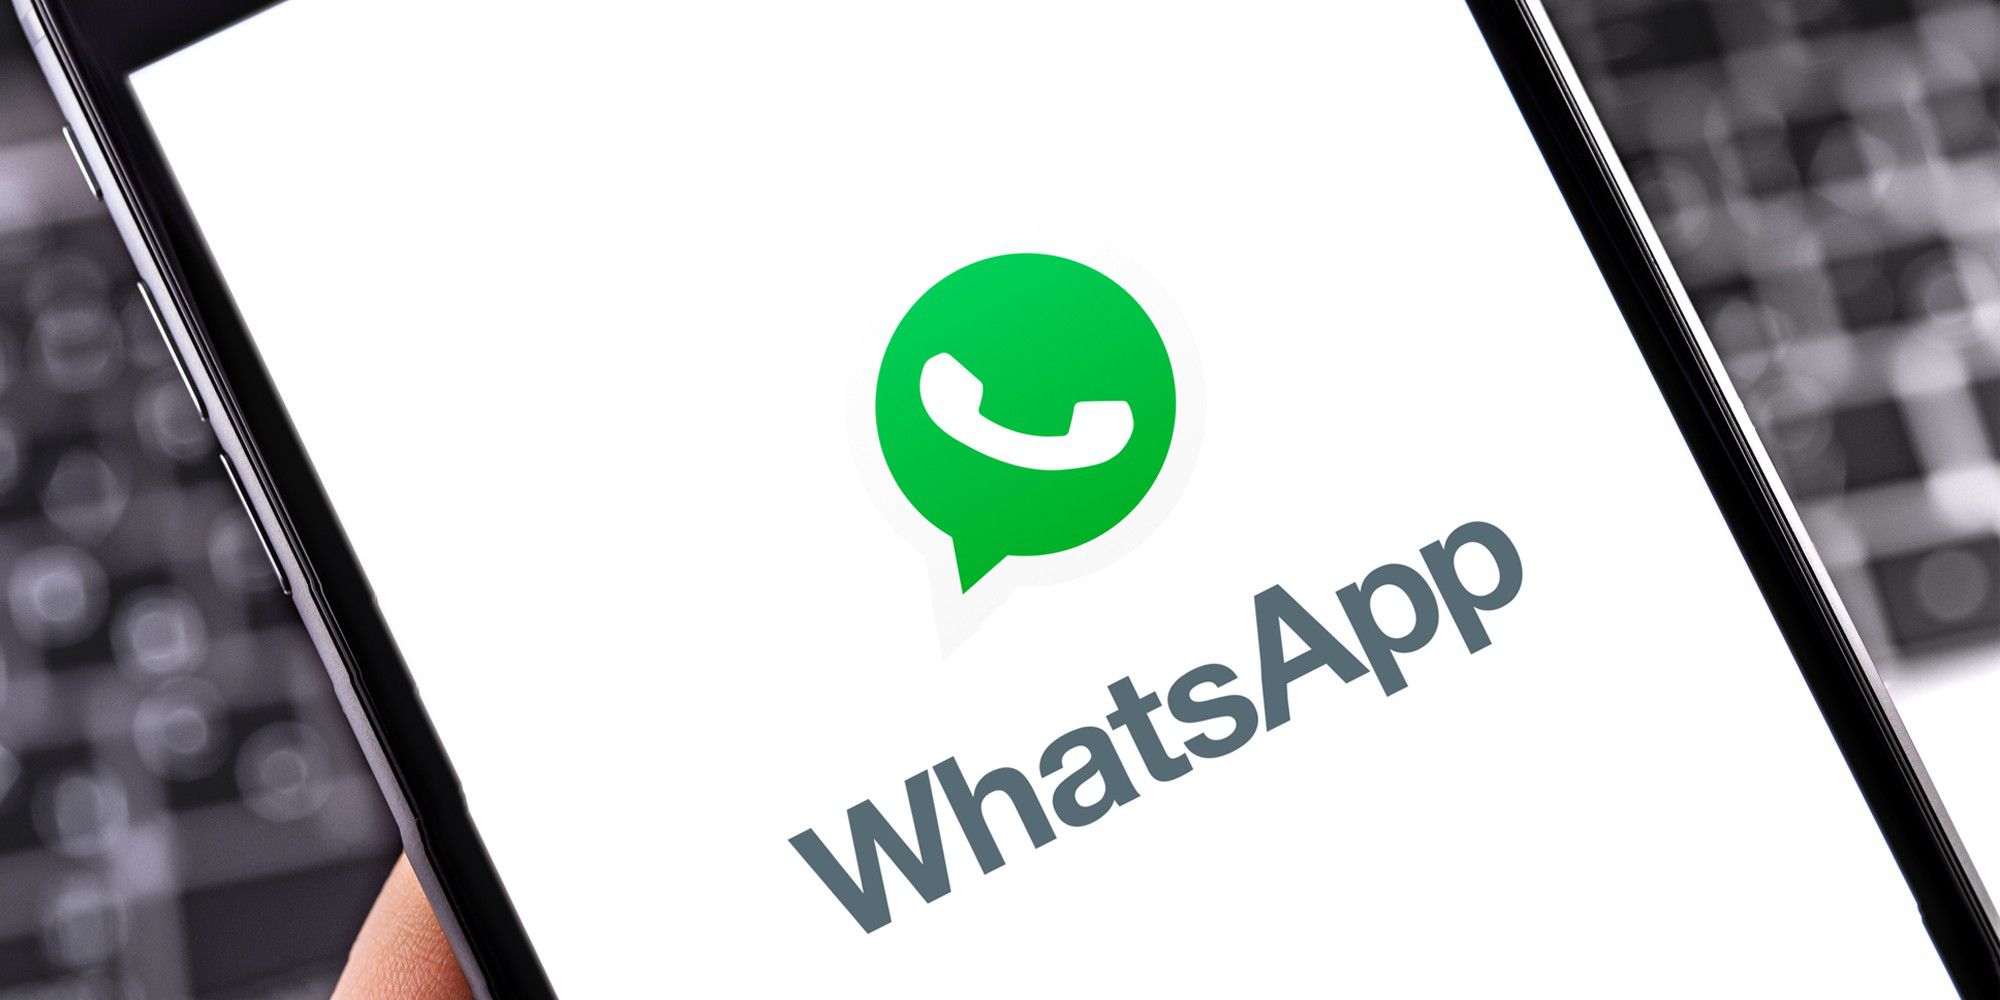 Whatsapp kein profilbild mehr